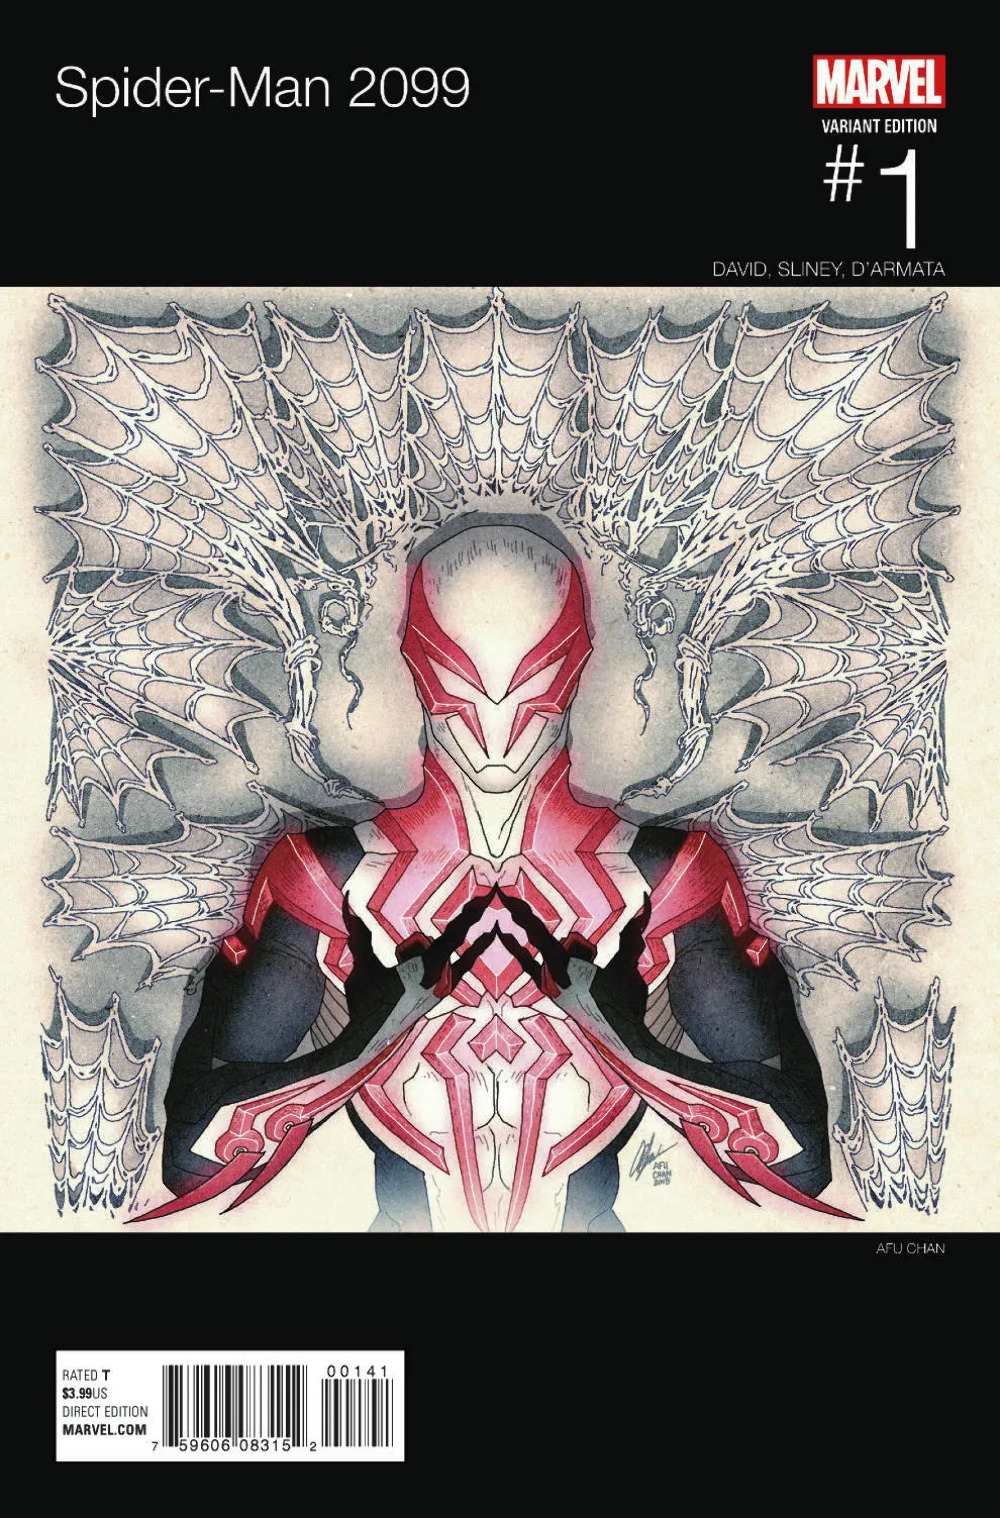 Spider-Man 2099 #1 (Marvel 2015) Chan Hip Hop Variant Cover Kanye West Homage